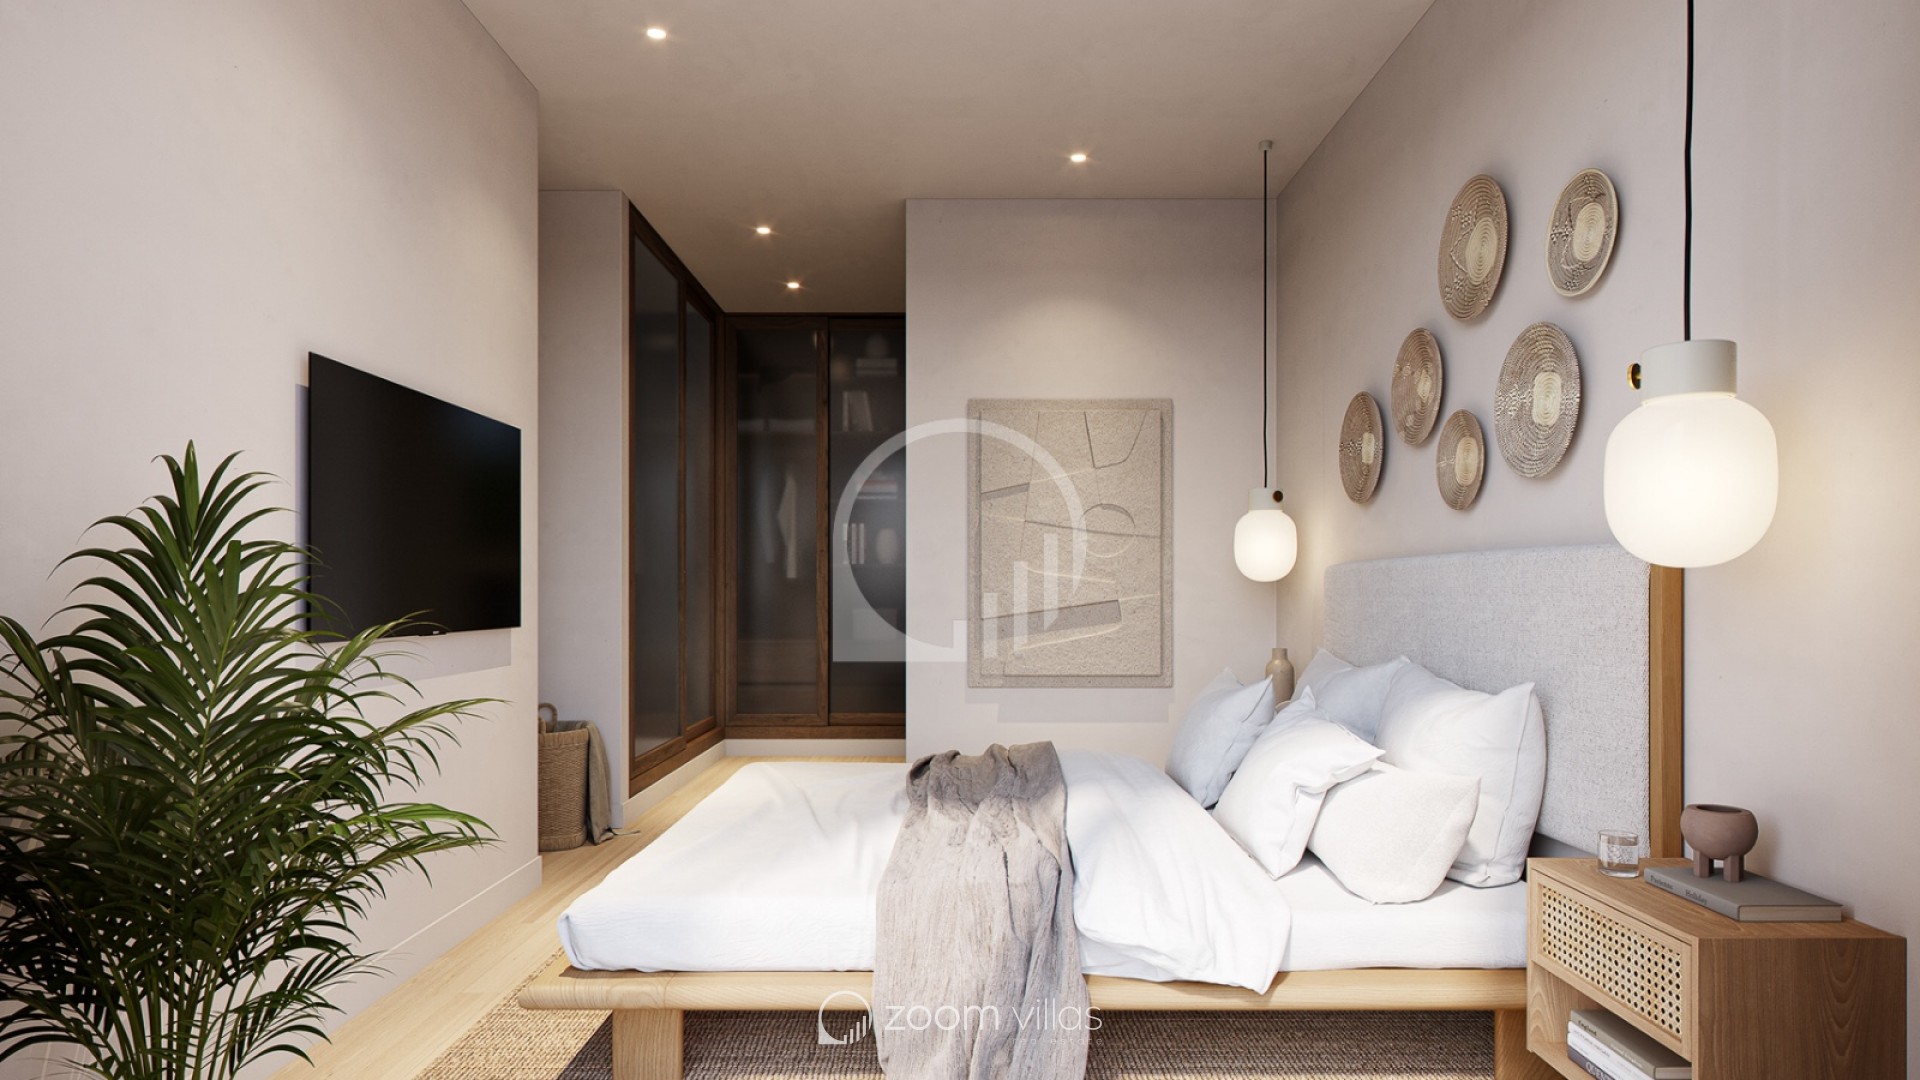 Villa zu verkaufen in Moraira mit schönem Schlafzimmer | Zoom Villas